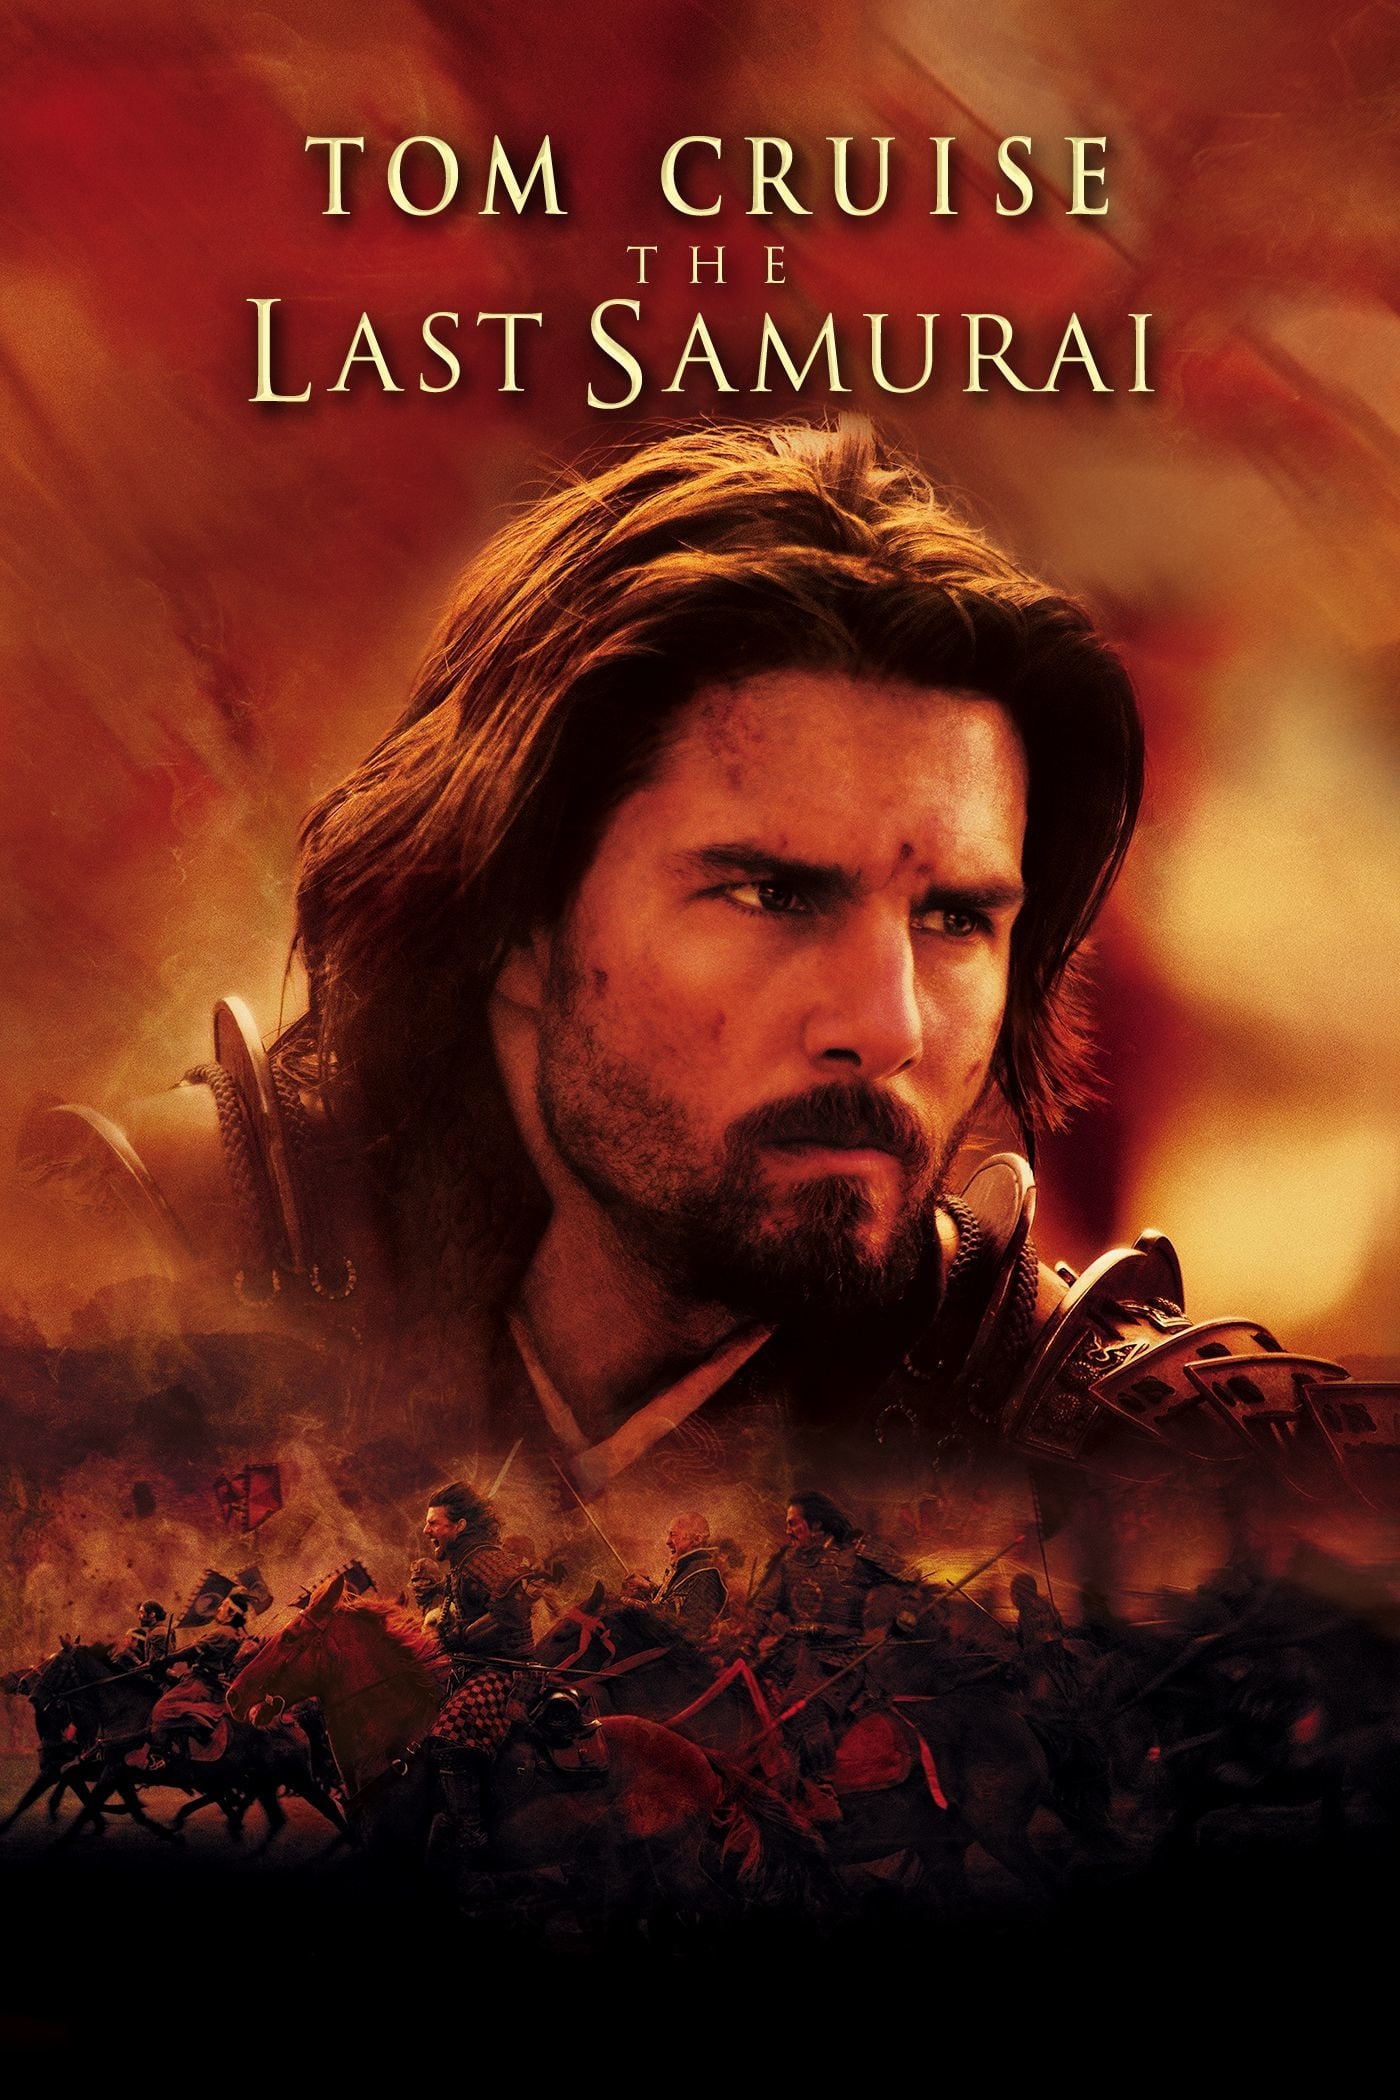 El último samurai